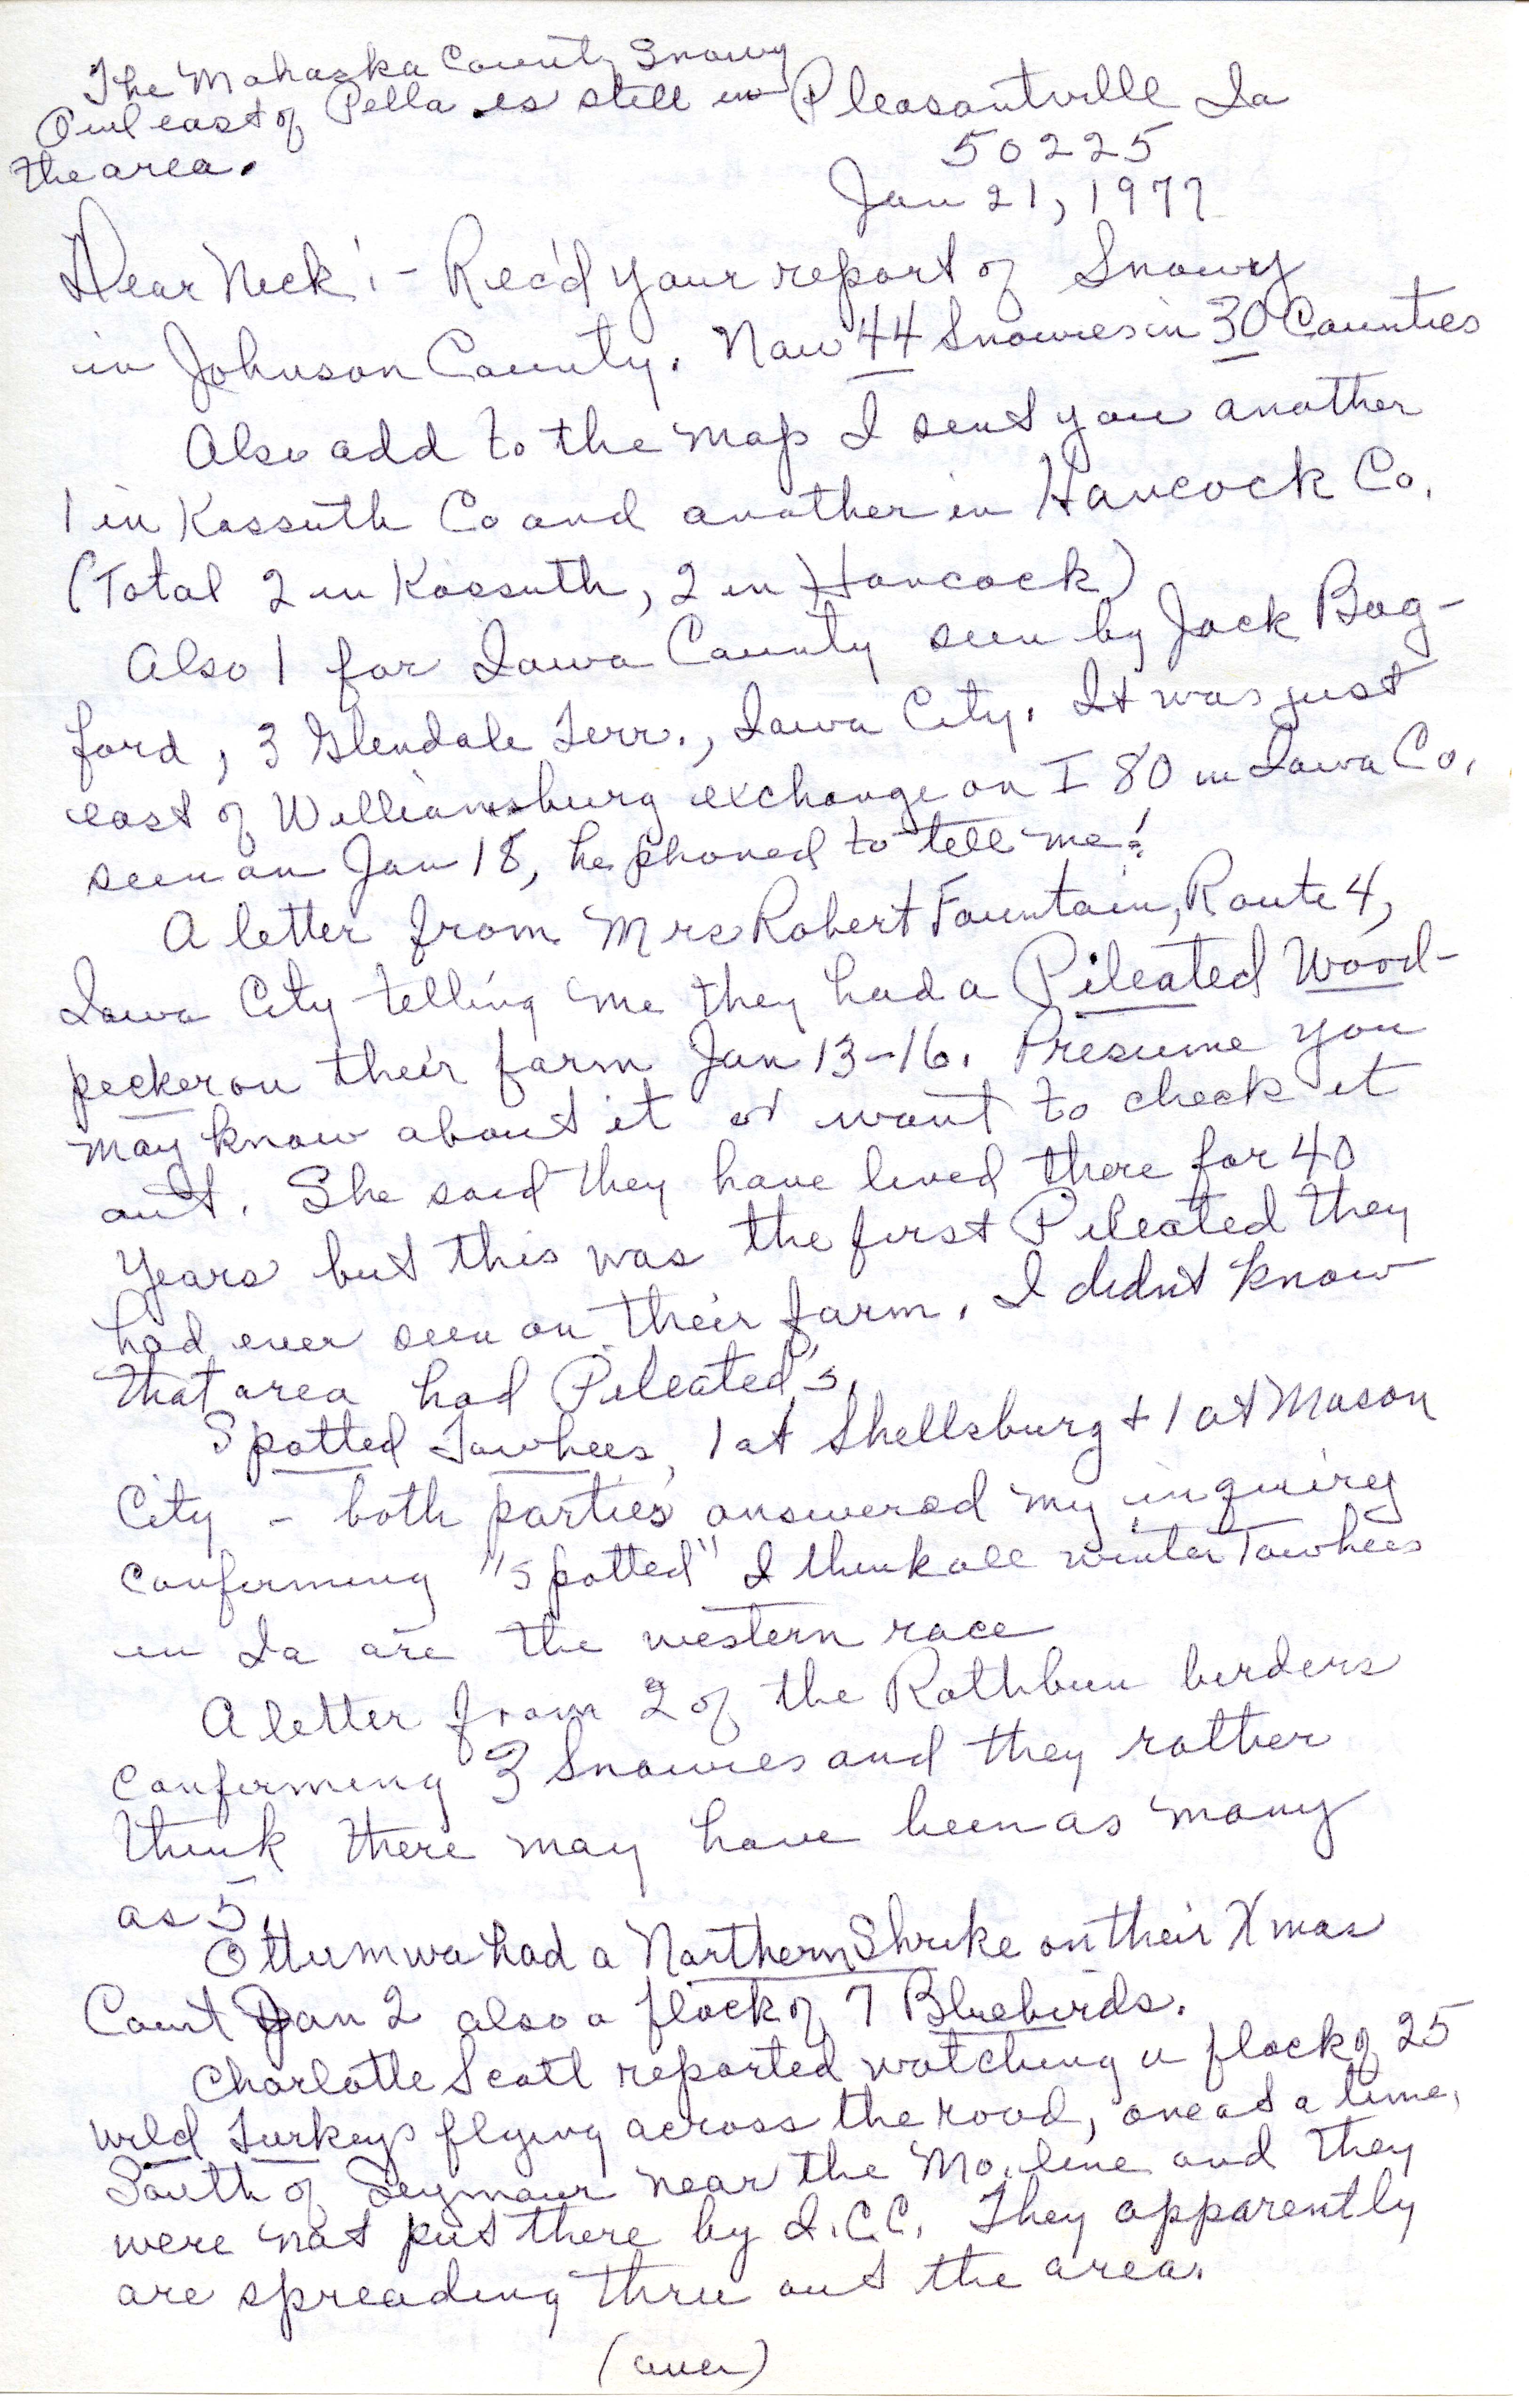 Gladys Black letter to Nicholas S. Halmi regarding bird sightings, January 21, 1977